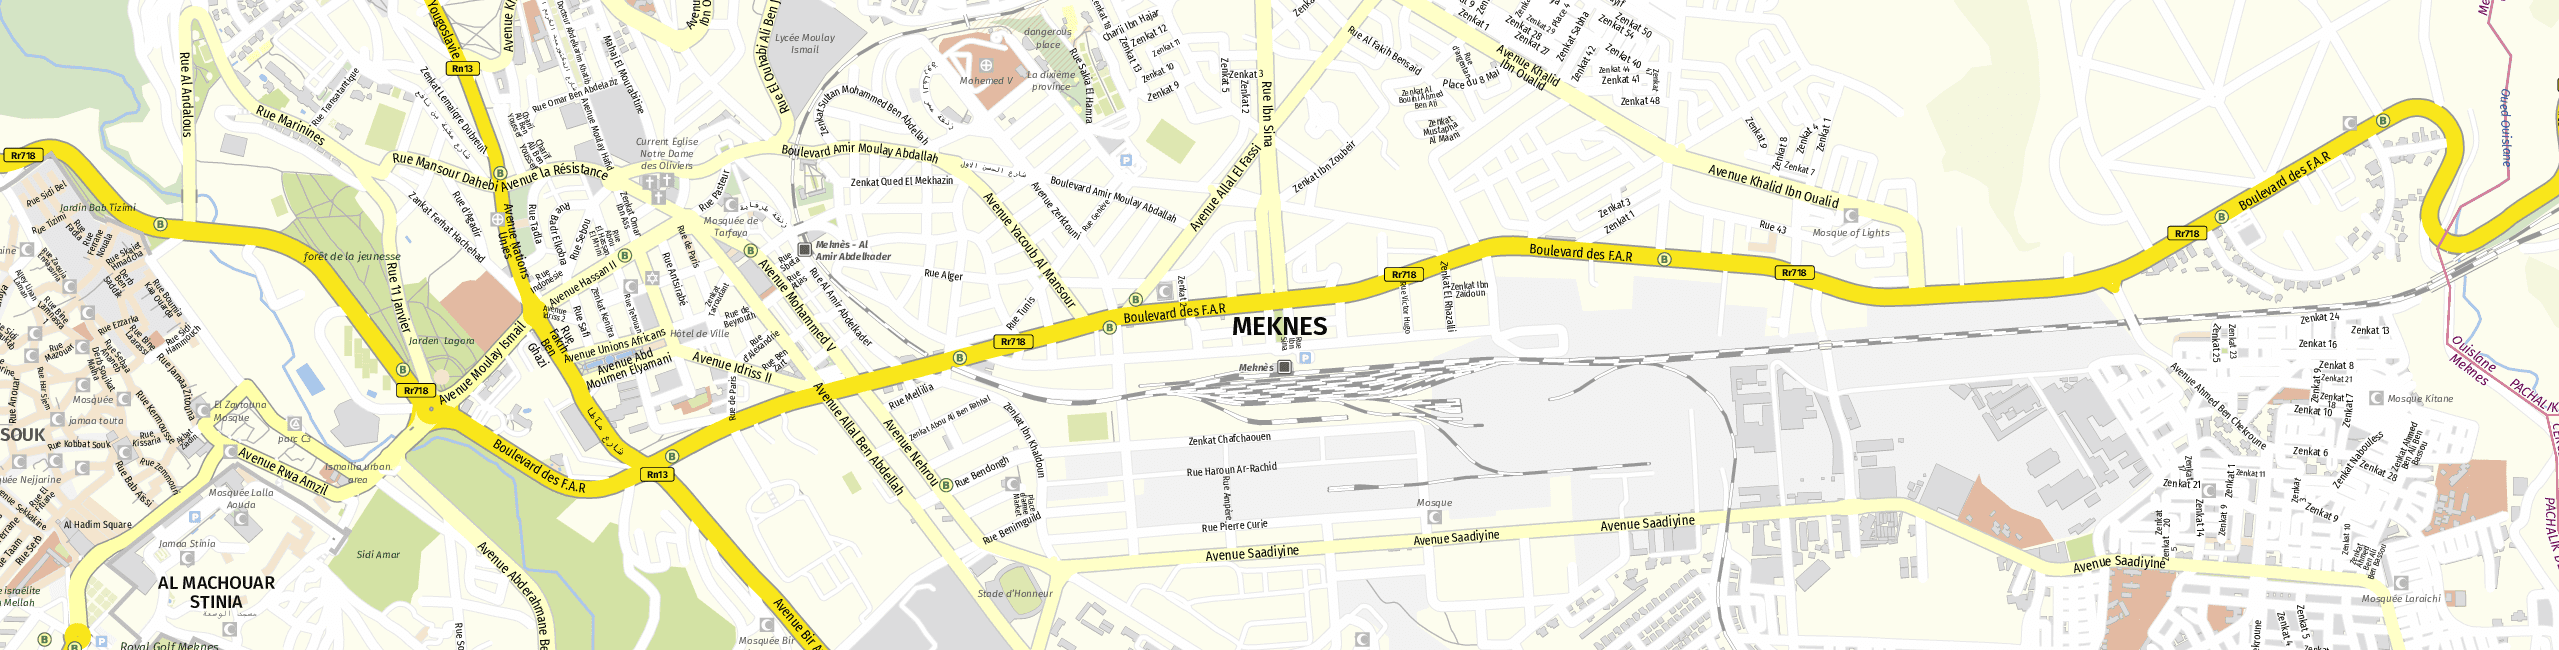 Stadtplan Meknès zum Downloaden.